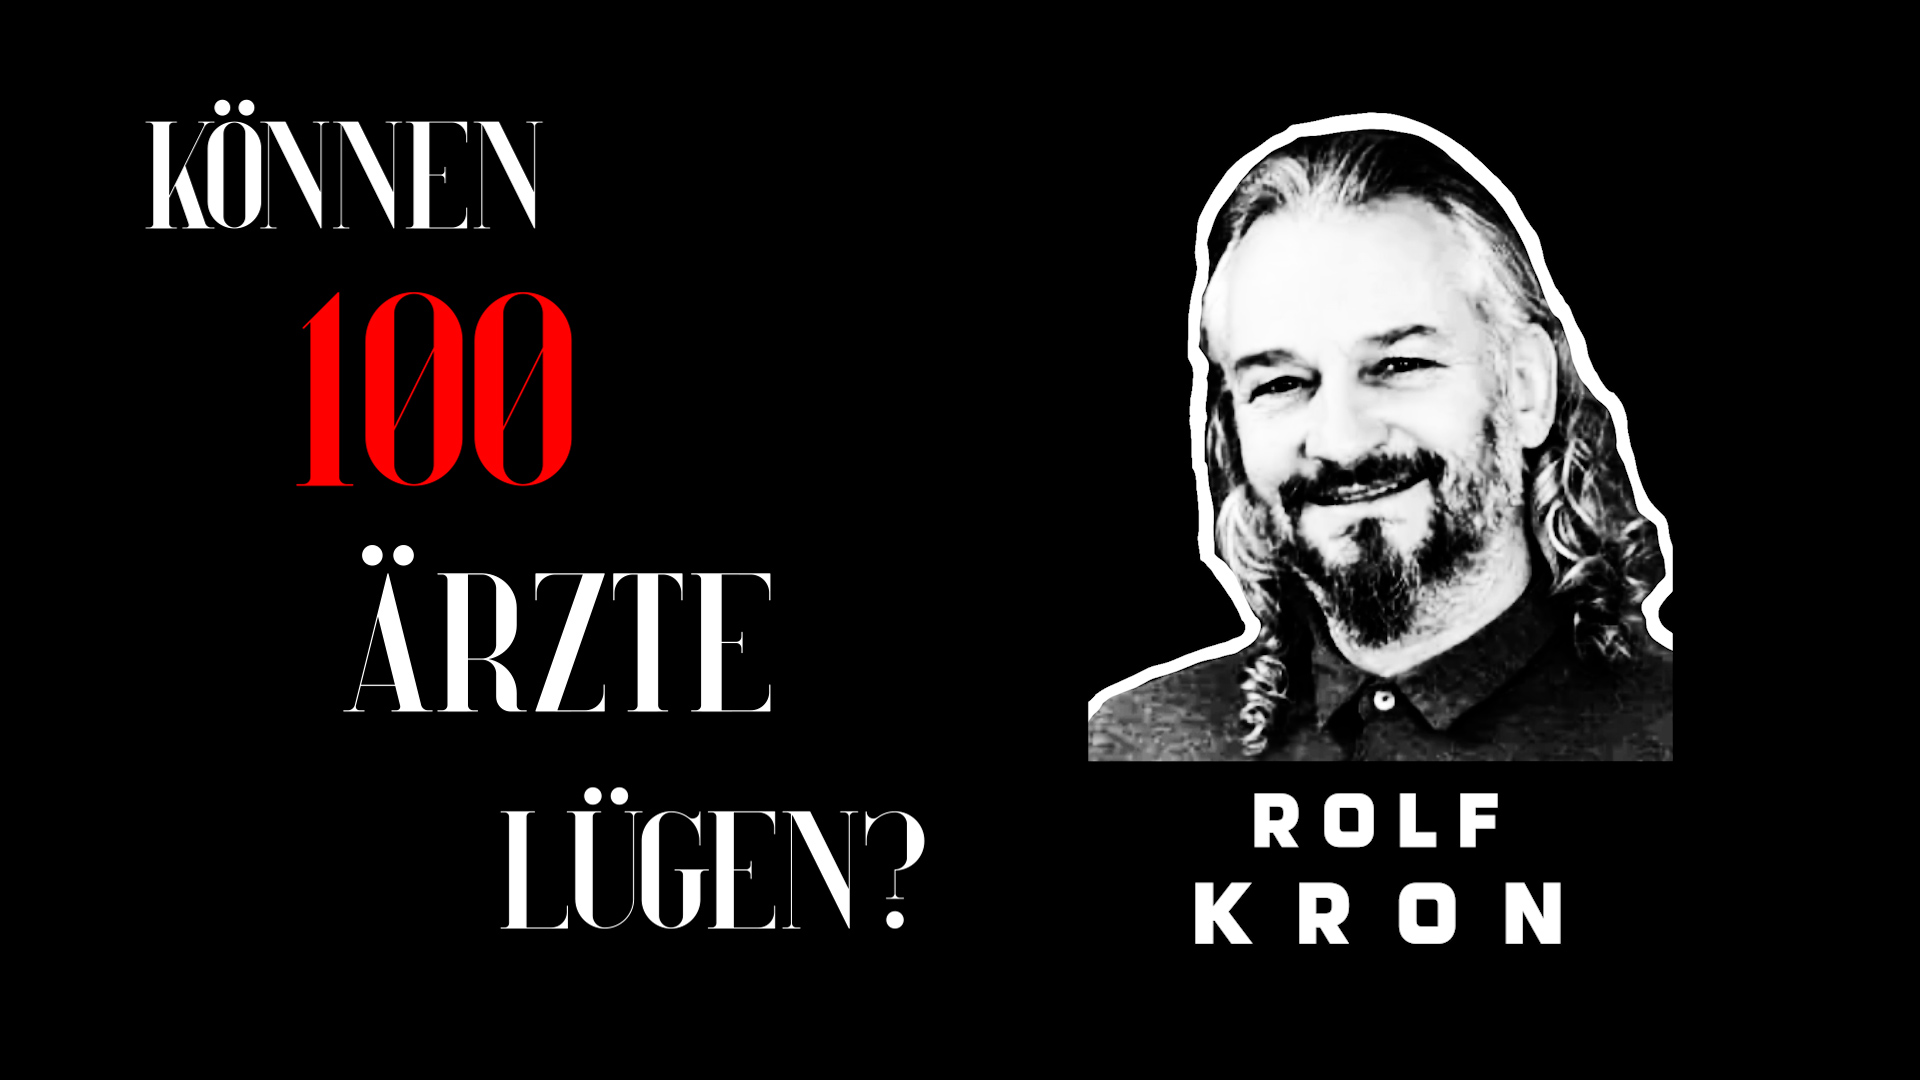 Rolf Kron